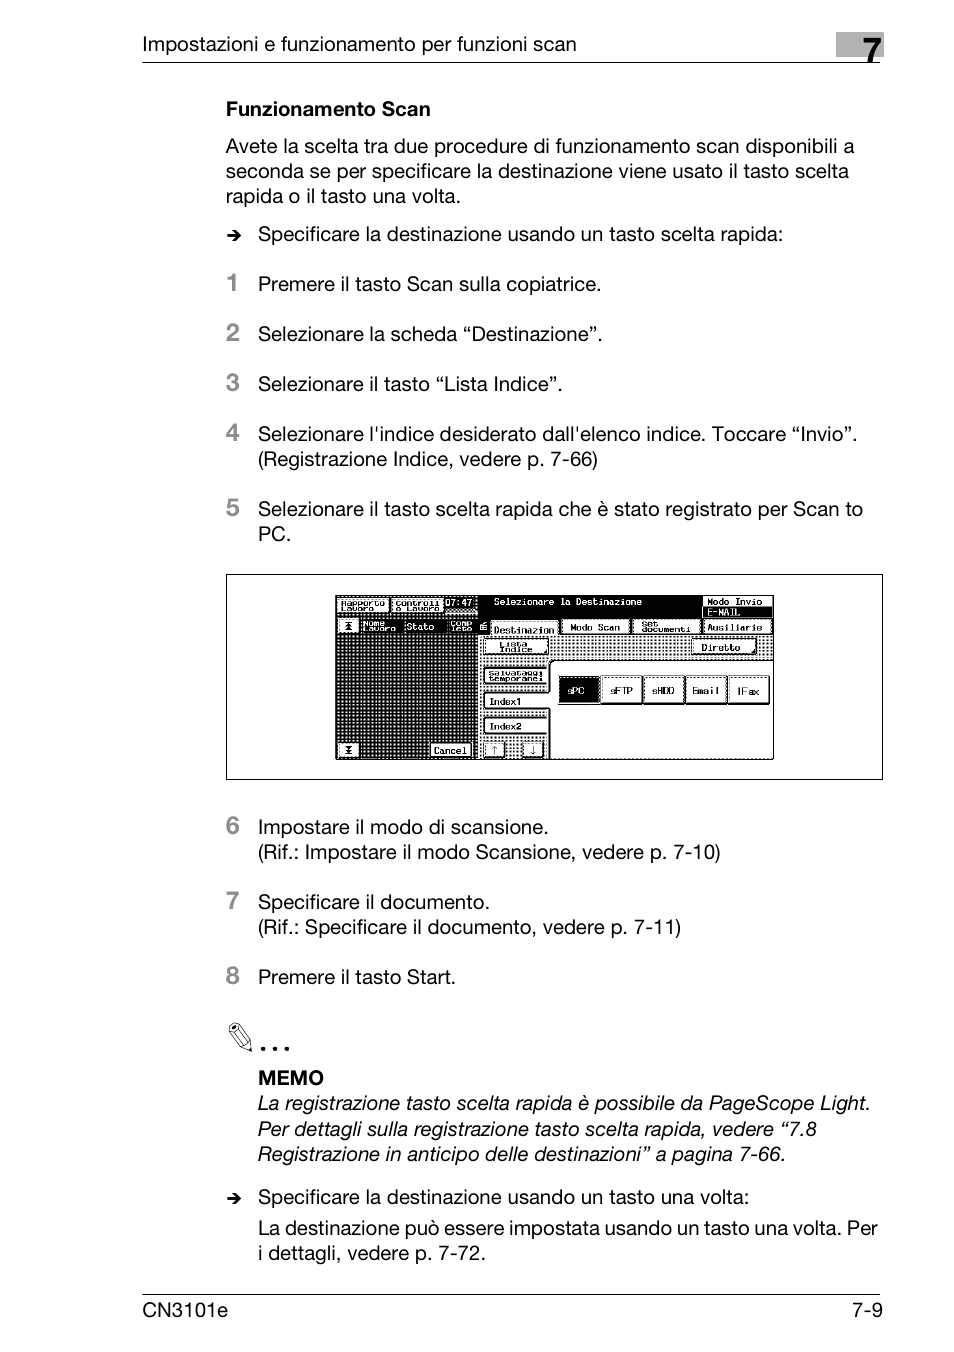 Funzionamento scan, Funzionamento scan -9 | Konica Minolta CN3101e Manuale d'uso | Pagina 83 / 242